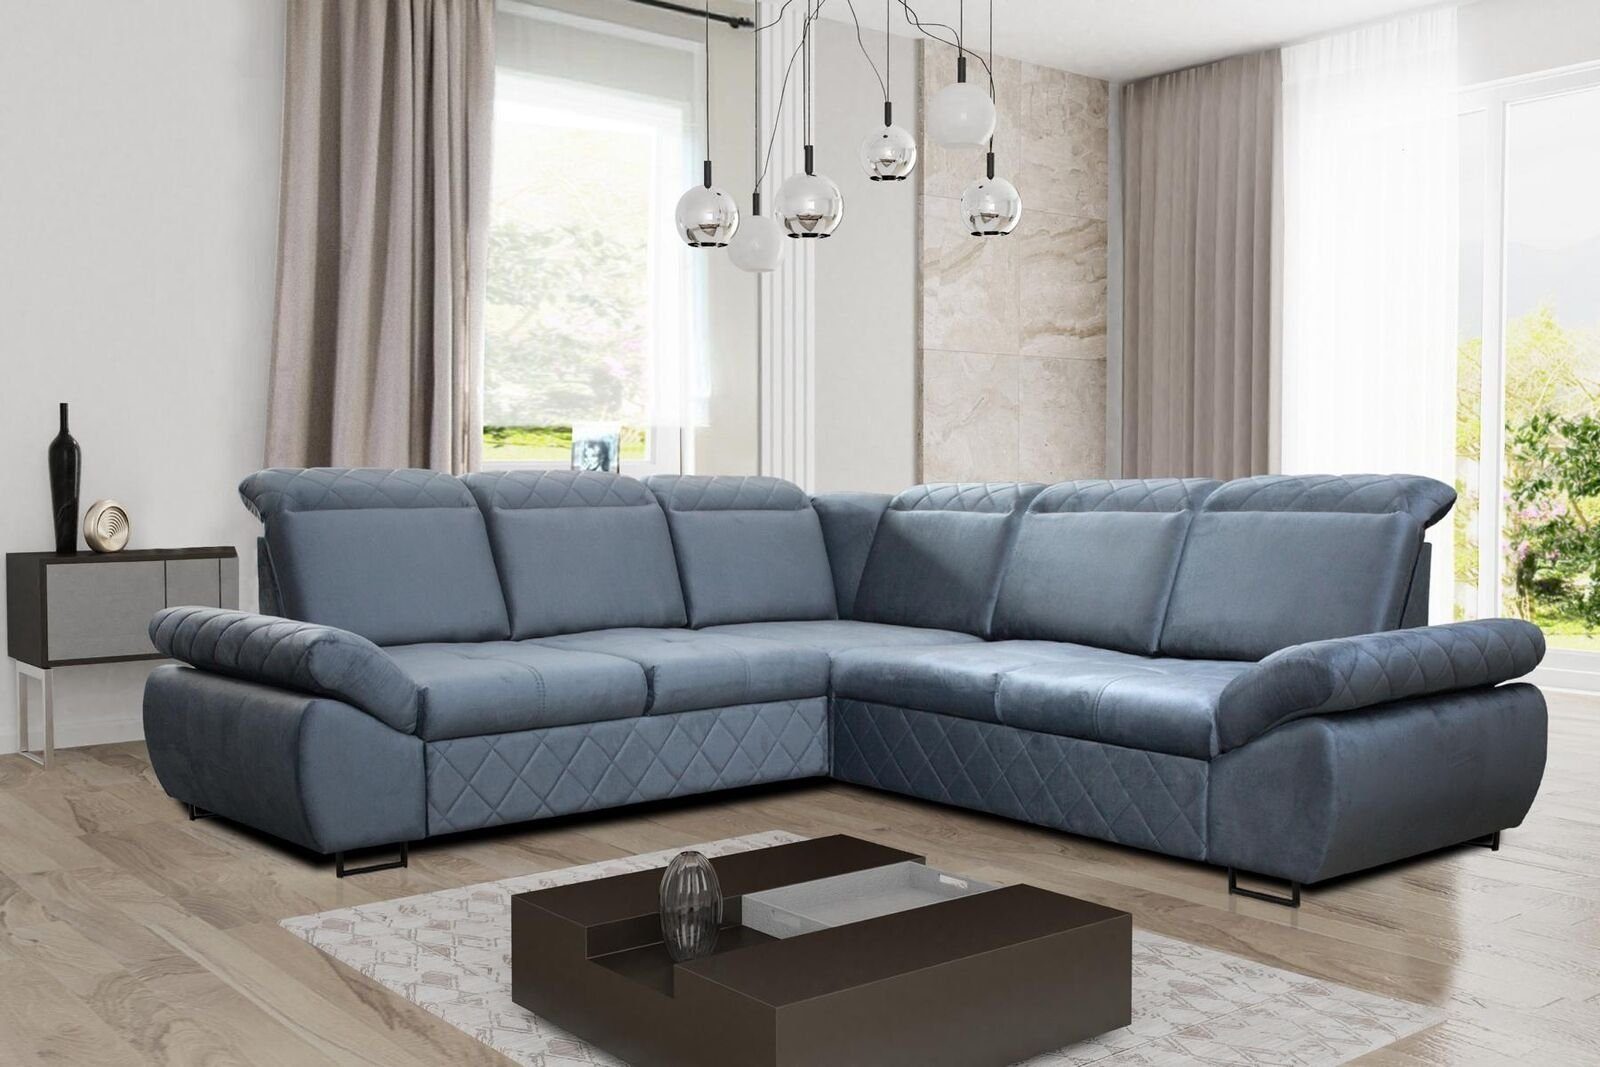 JVmoebel Ecksofa Moderne Design Sofas Couchs Möbel Textil LForm Neu Wohnzimmer Ecksofa, Mit Bettfunktion Blau